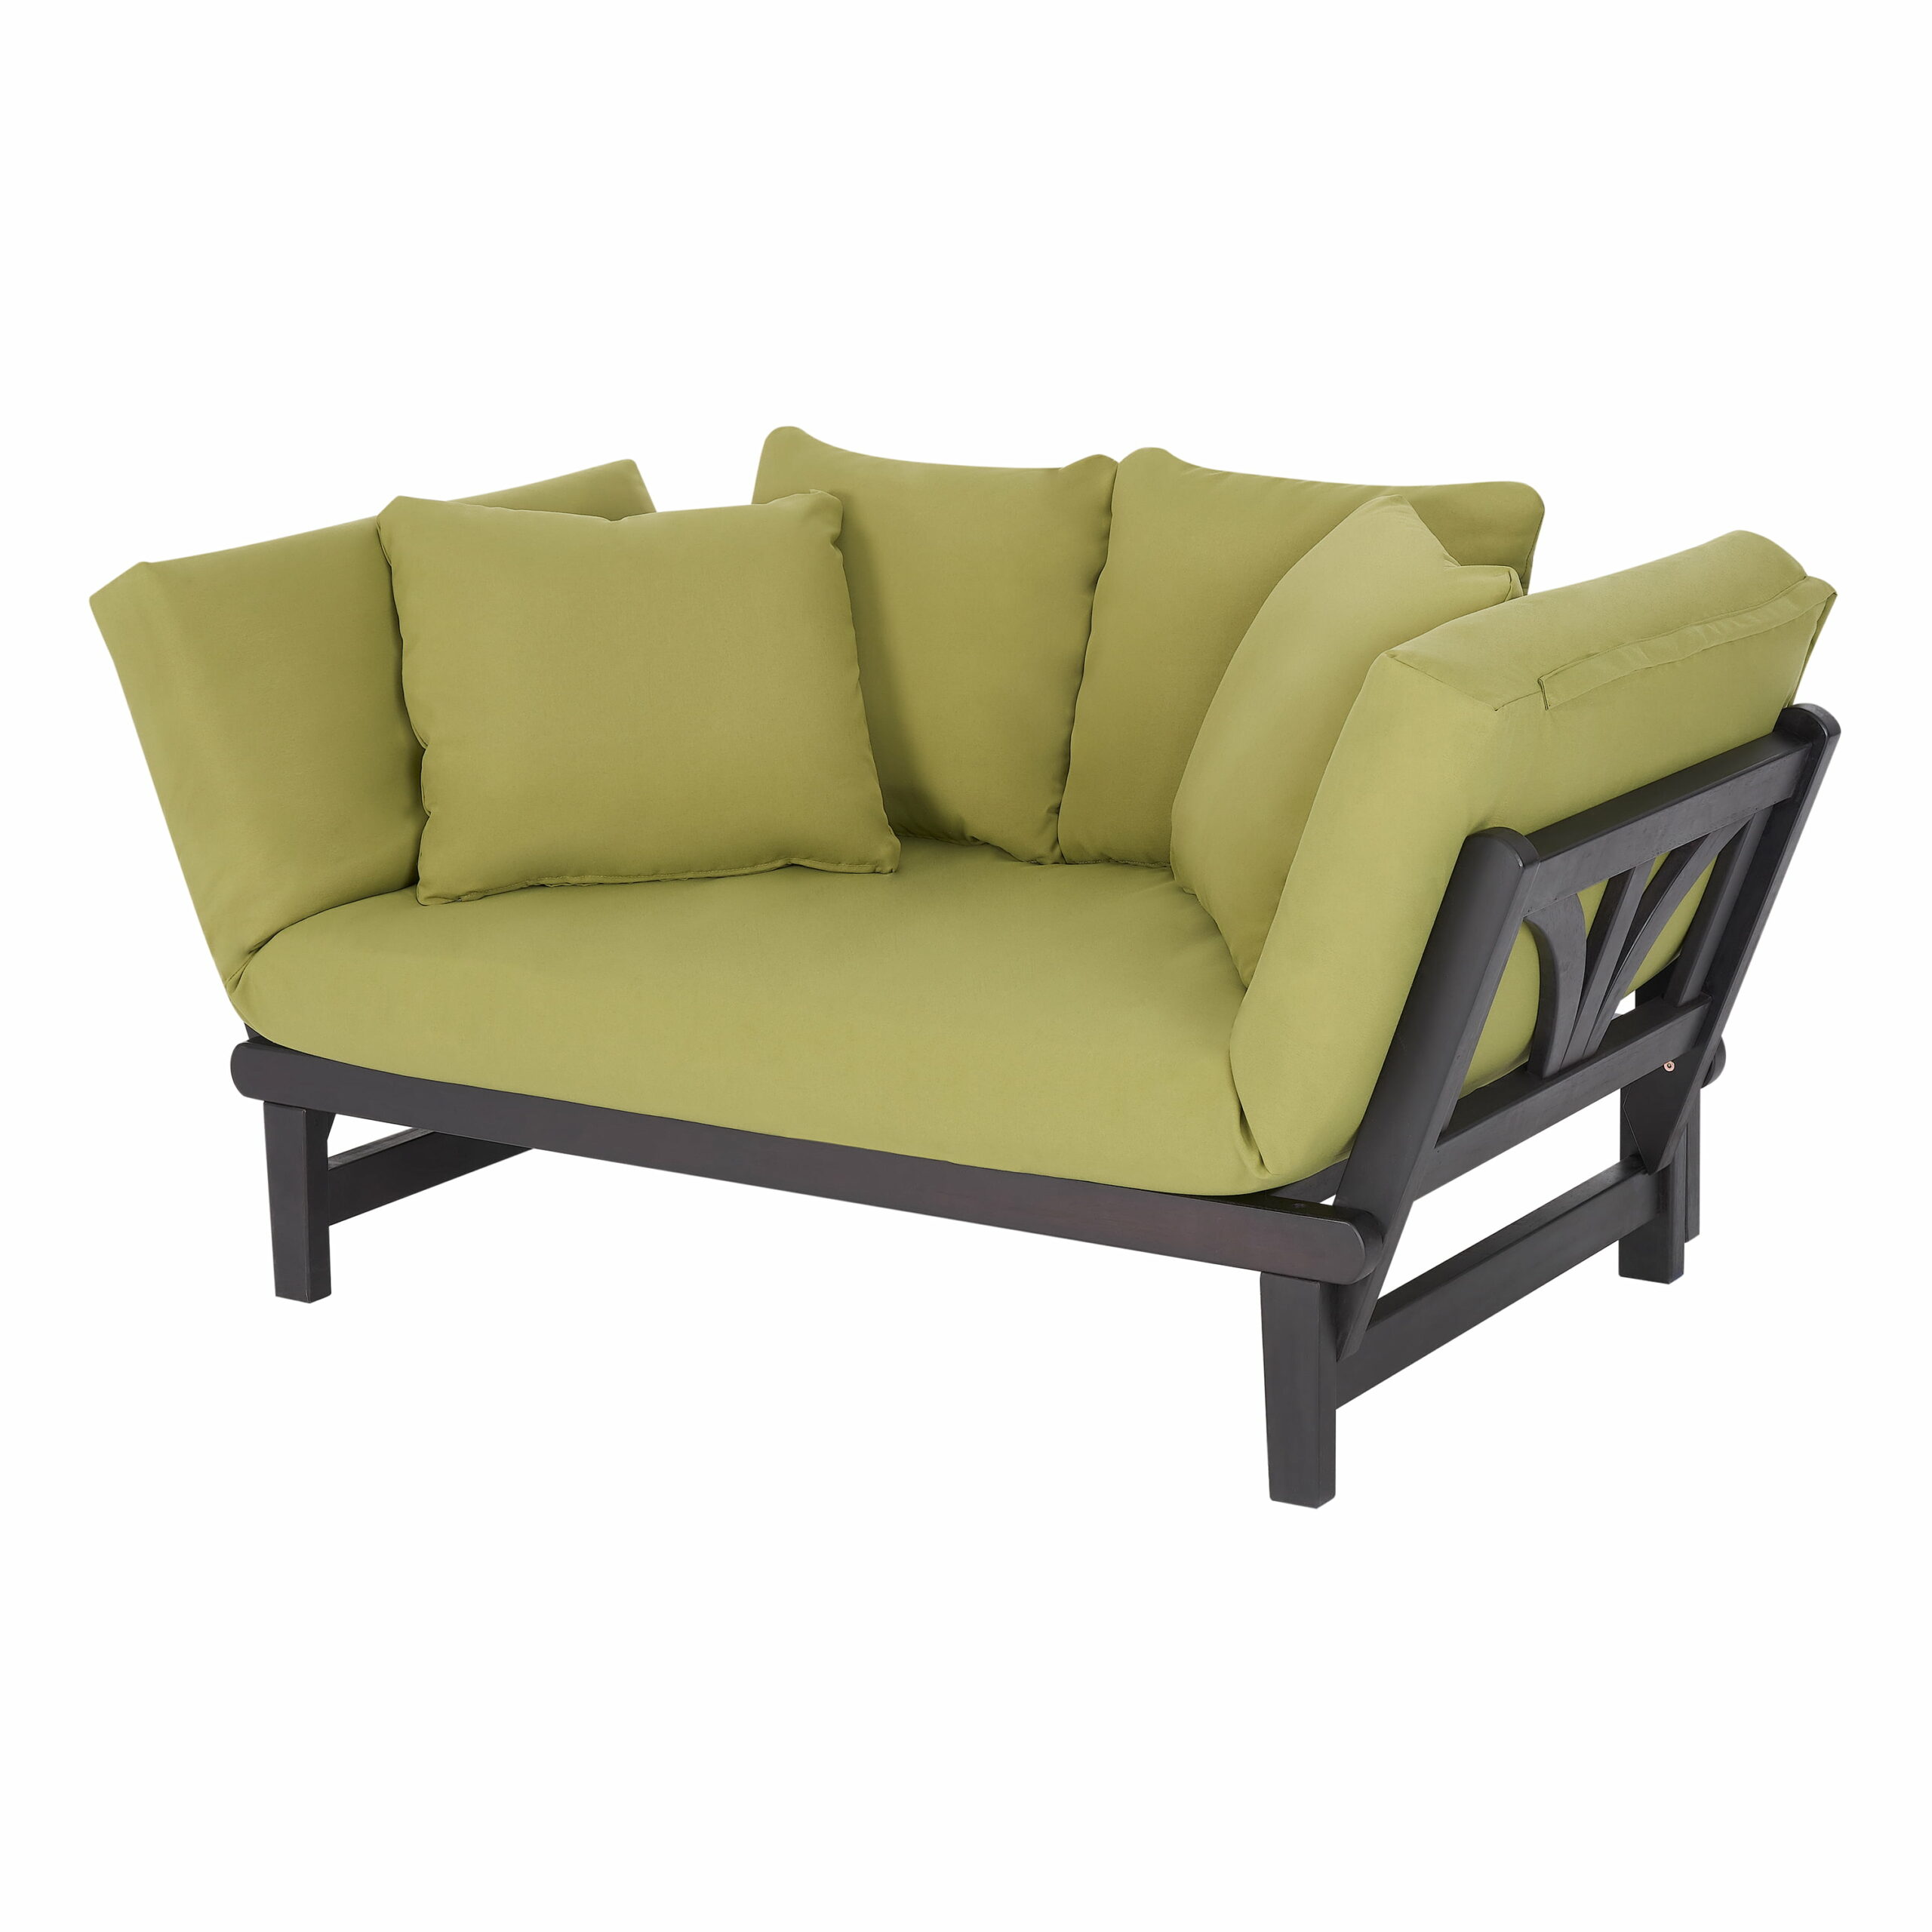 classic sofas design